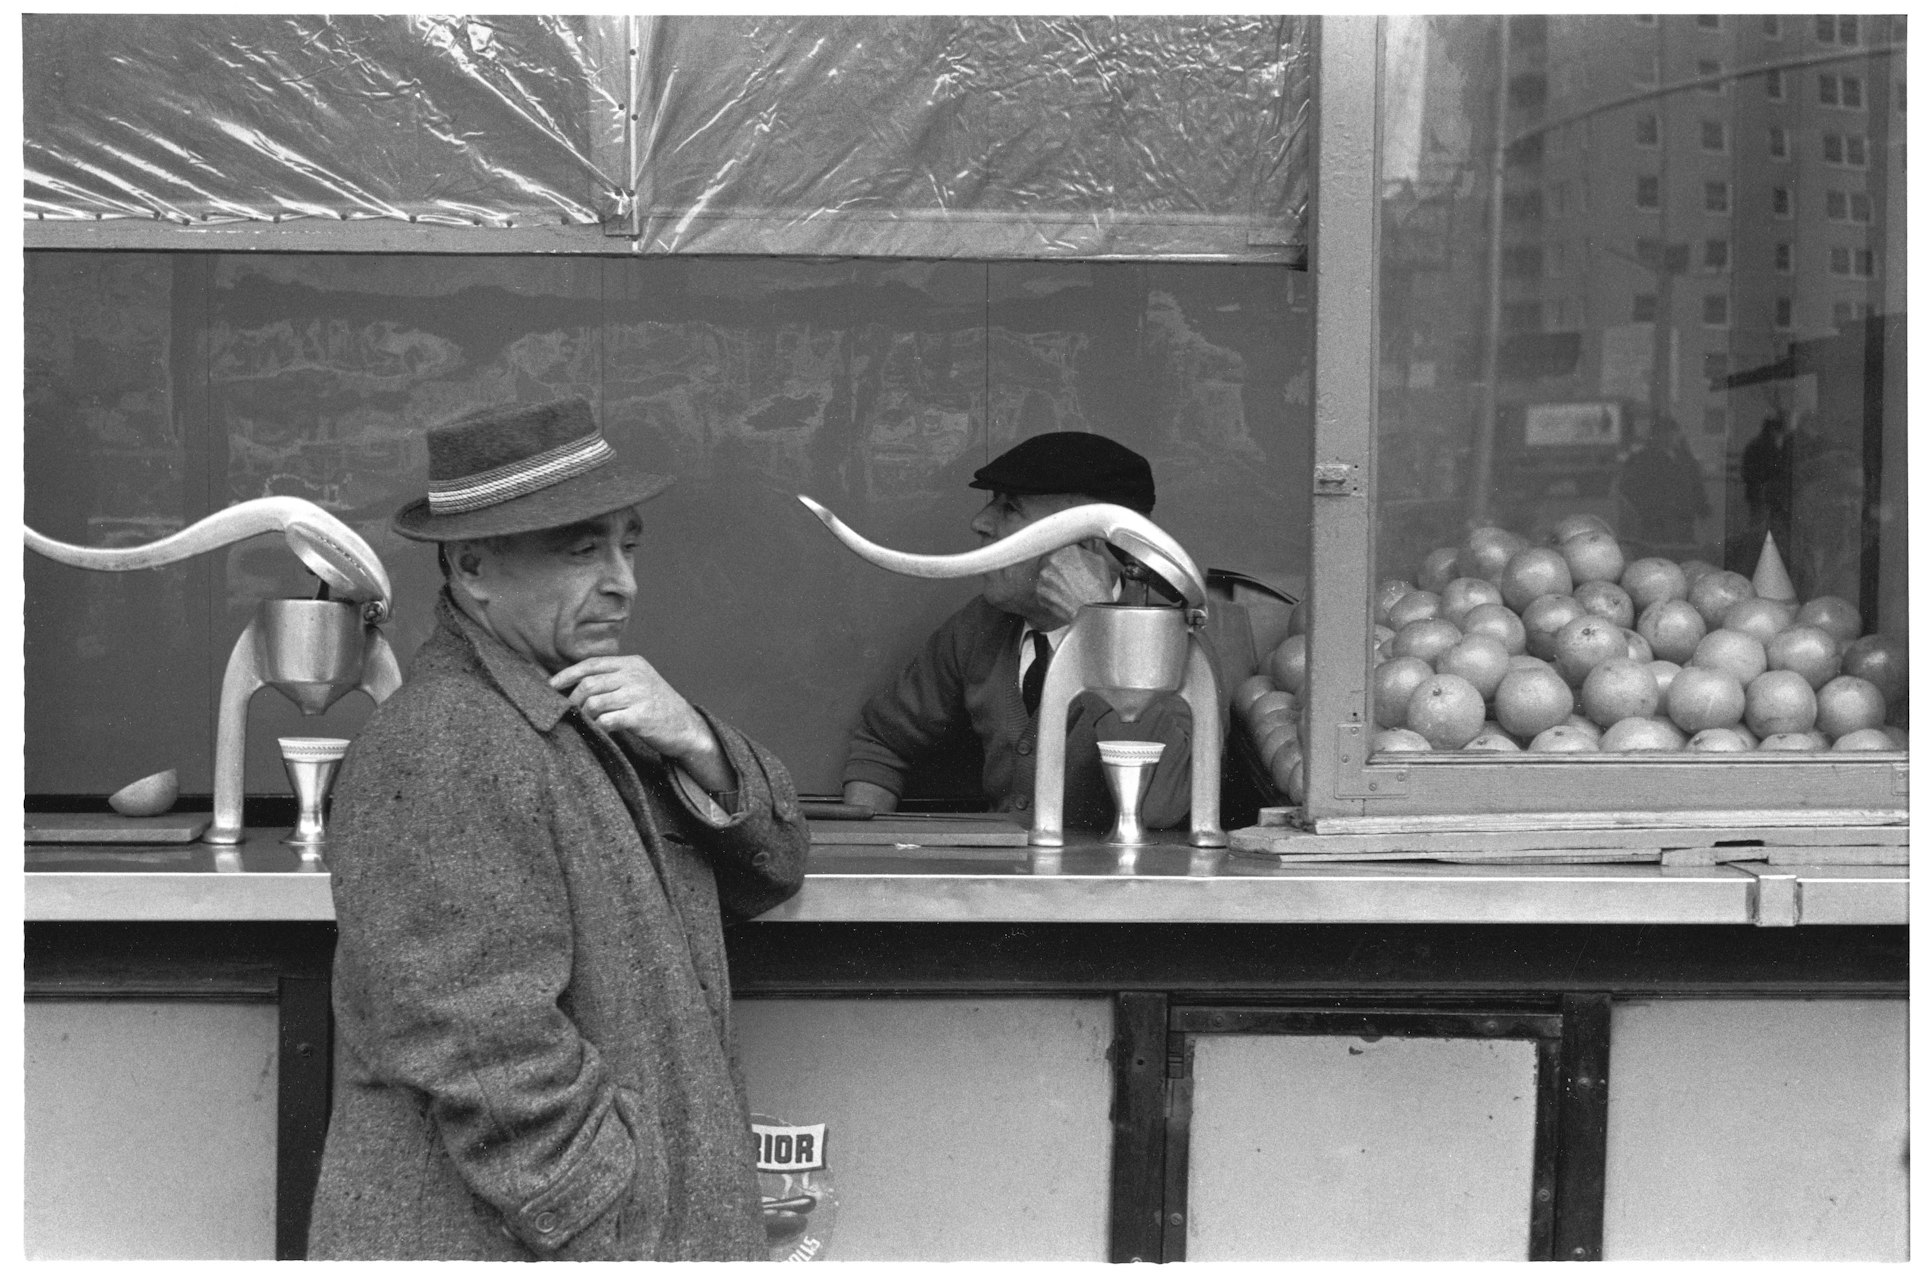 Orange juice stand, 1960